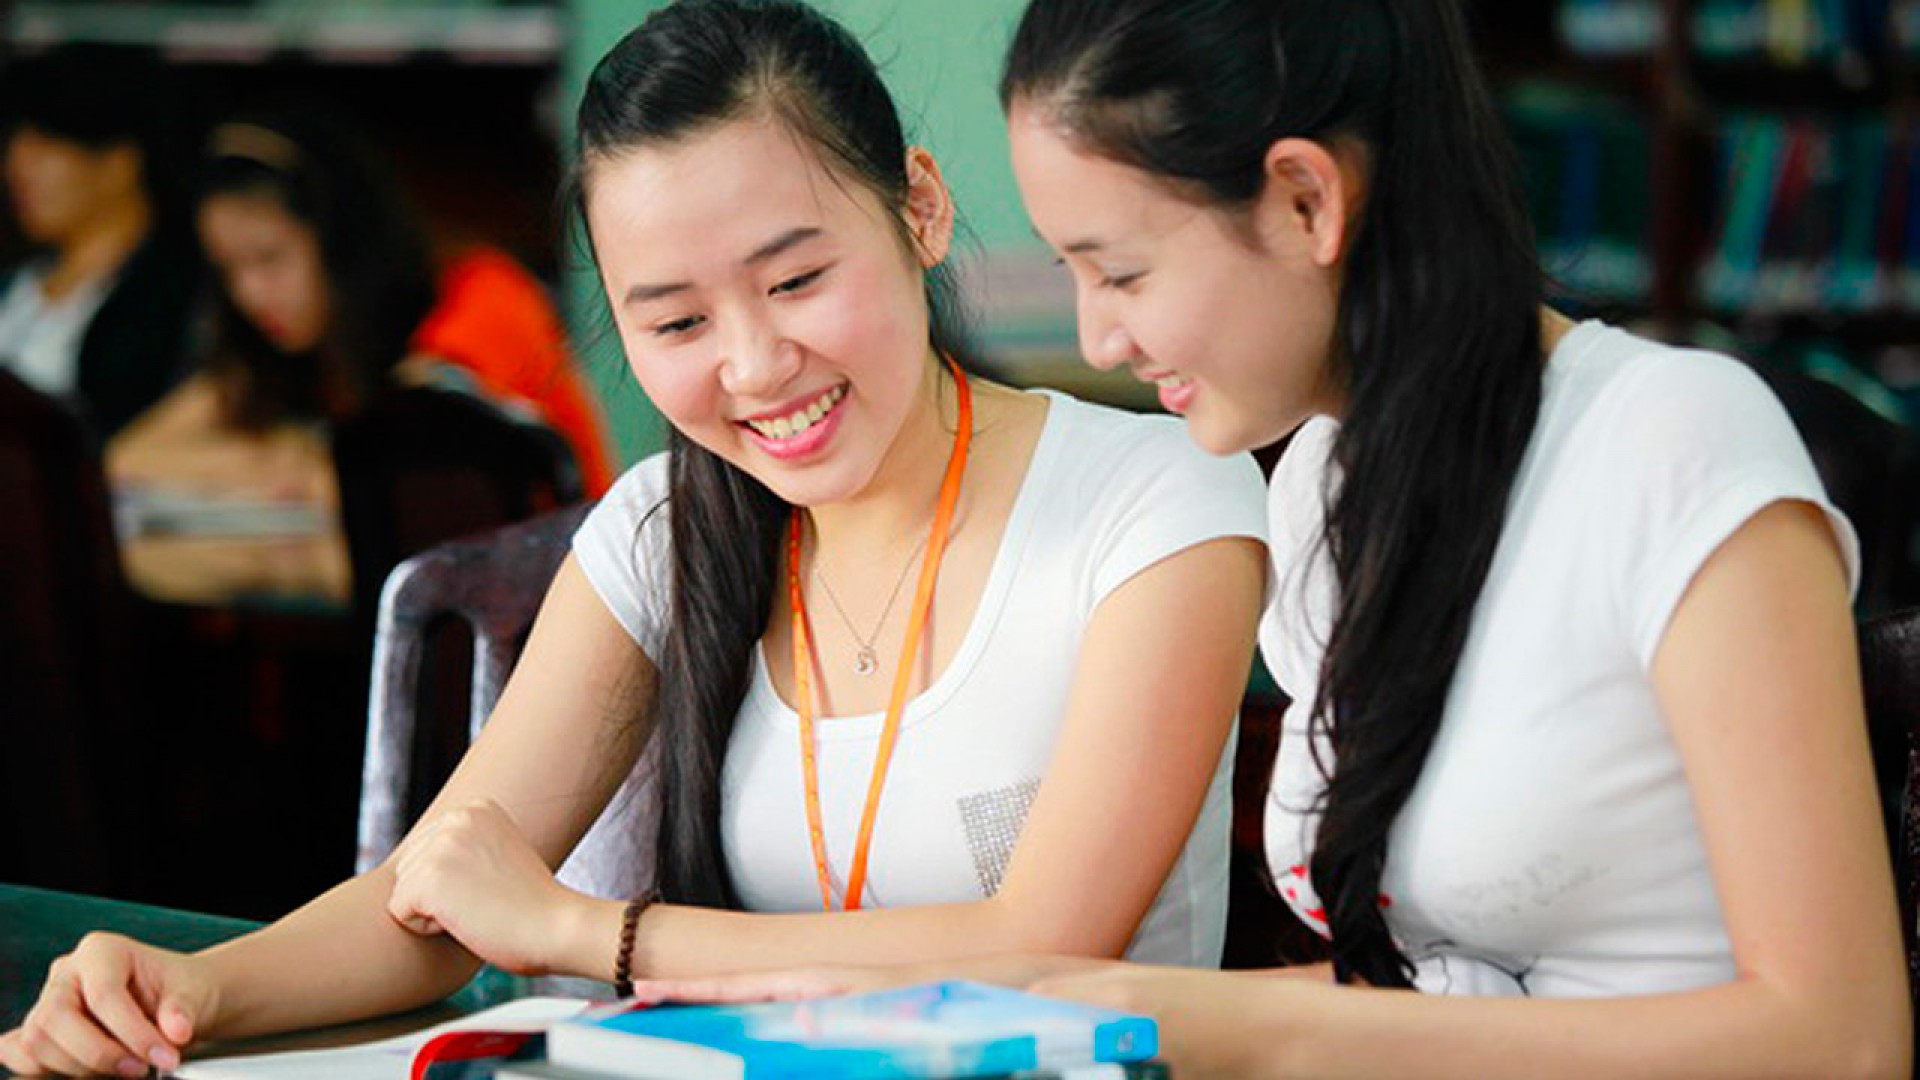 Trung tâm tiếng Anh tại Tuyên Quang: Đâu là sự lựa chọn tốt cho bạn?